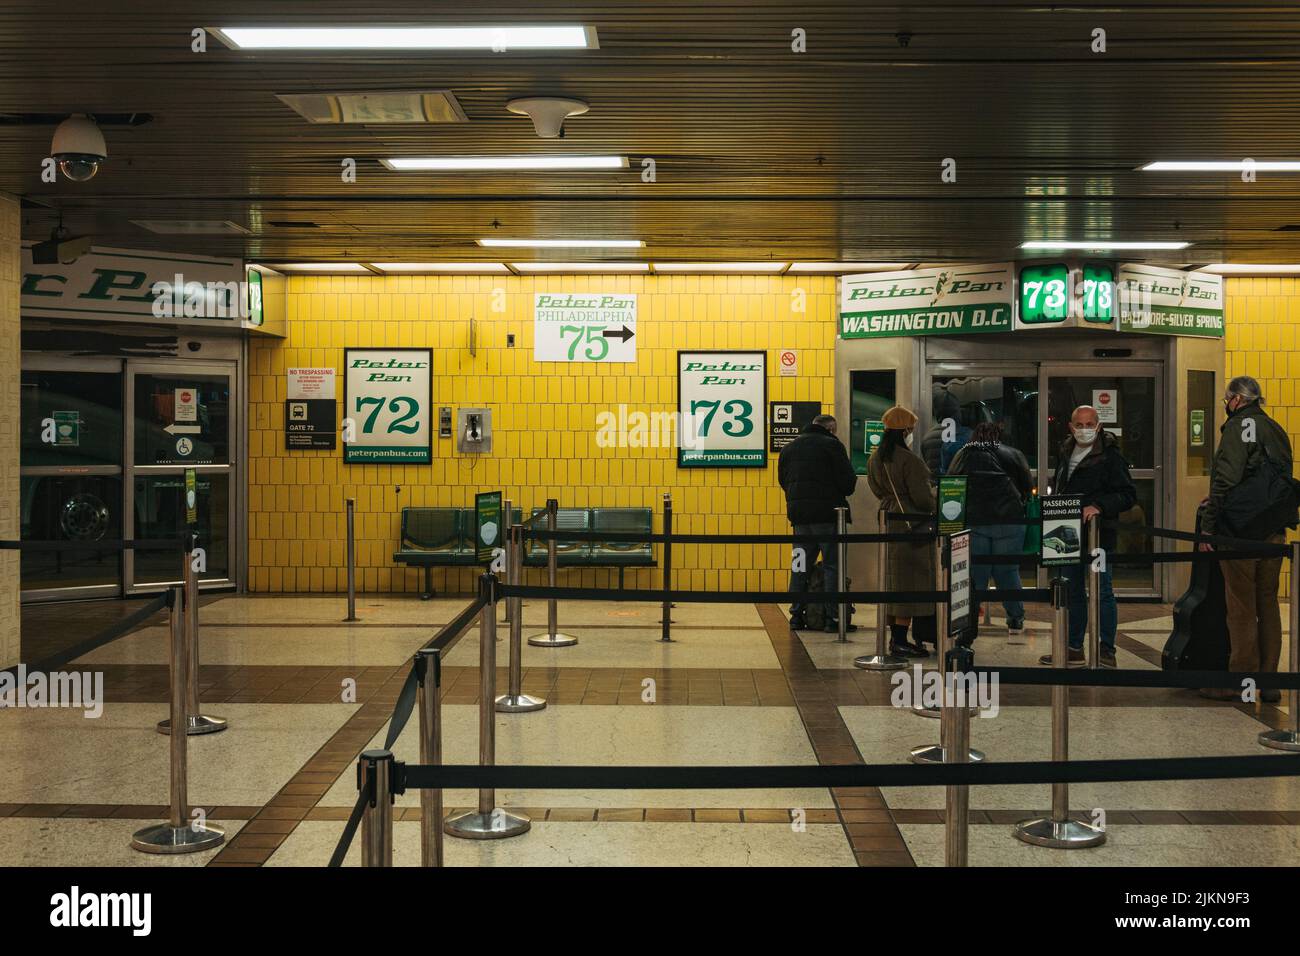 Passagers faisant la queue pour monter à bord des bus interurbains Peter Pan à Penn Station, New York Banque D'Images